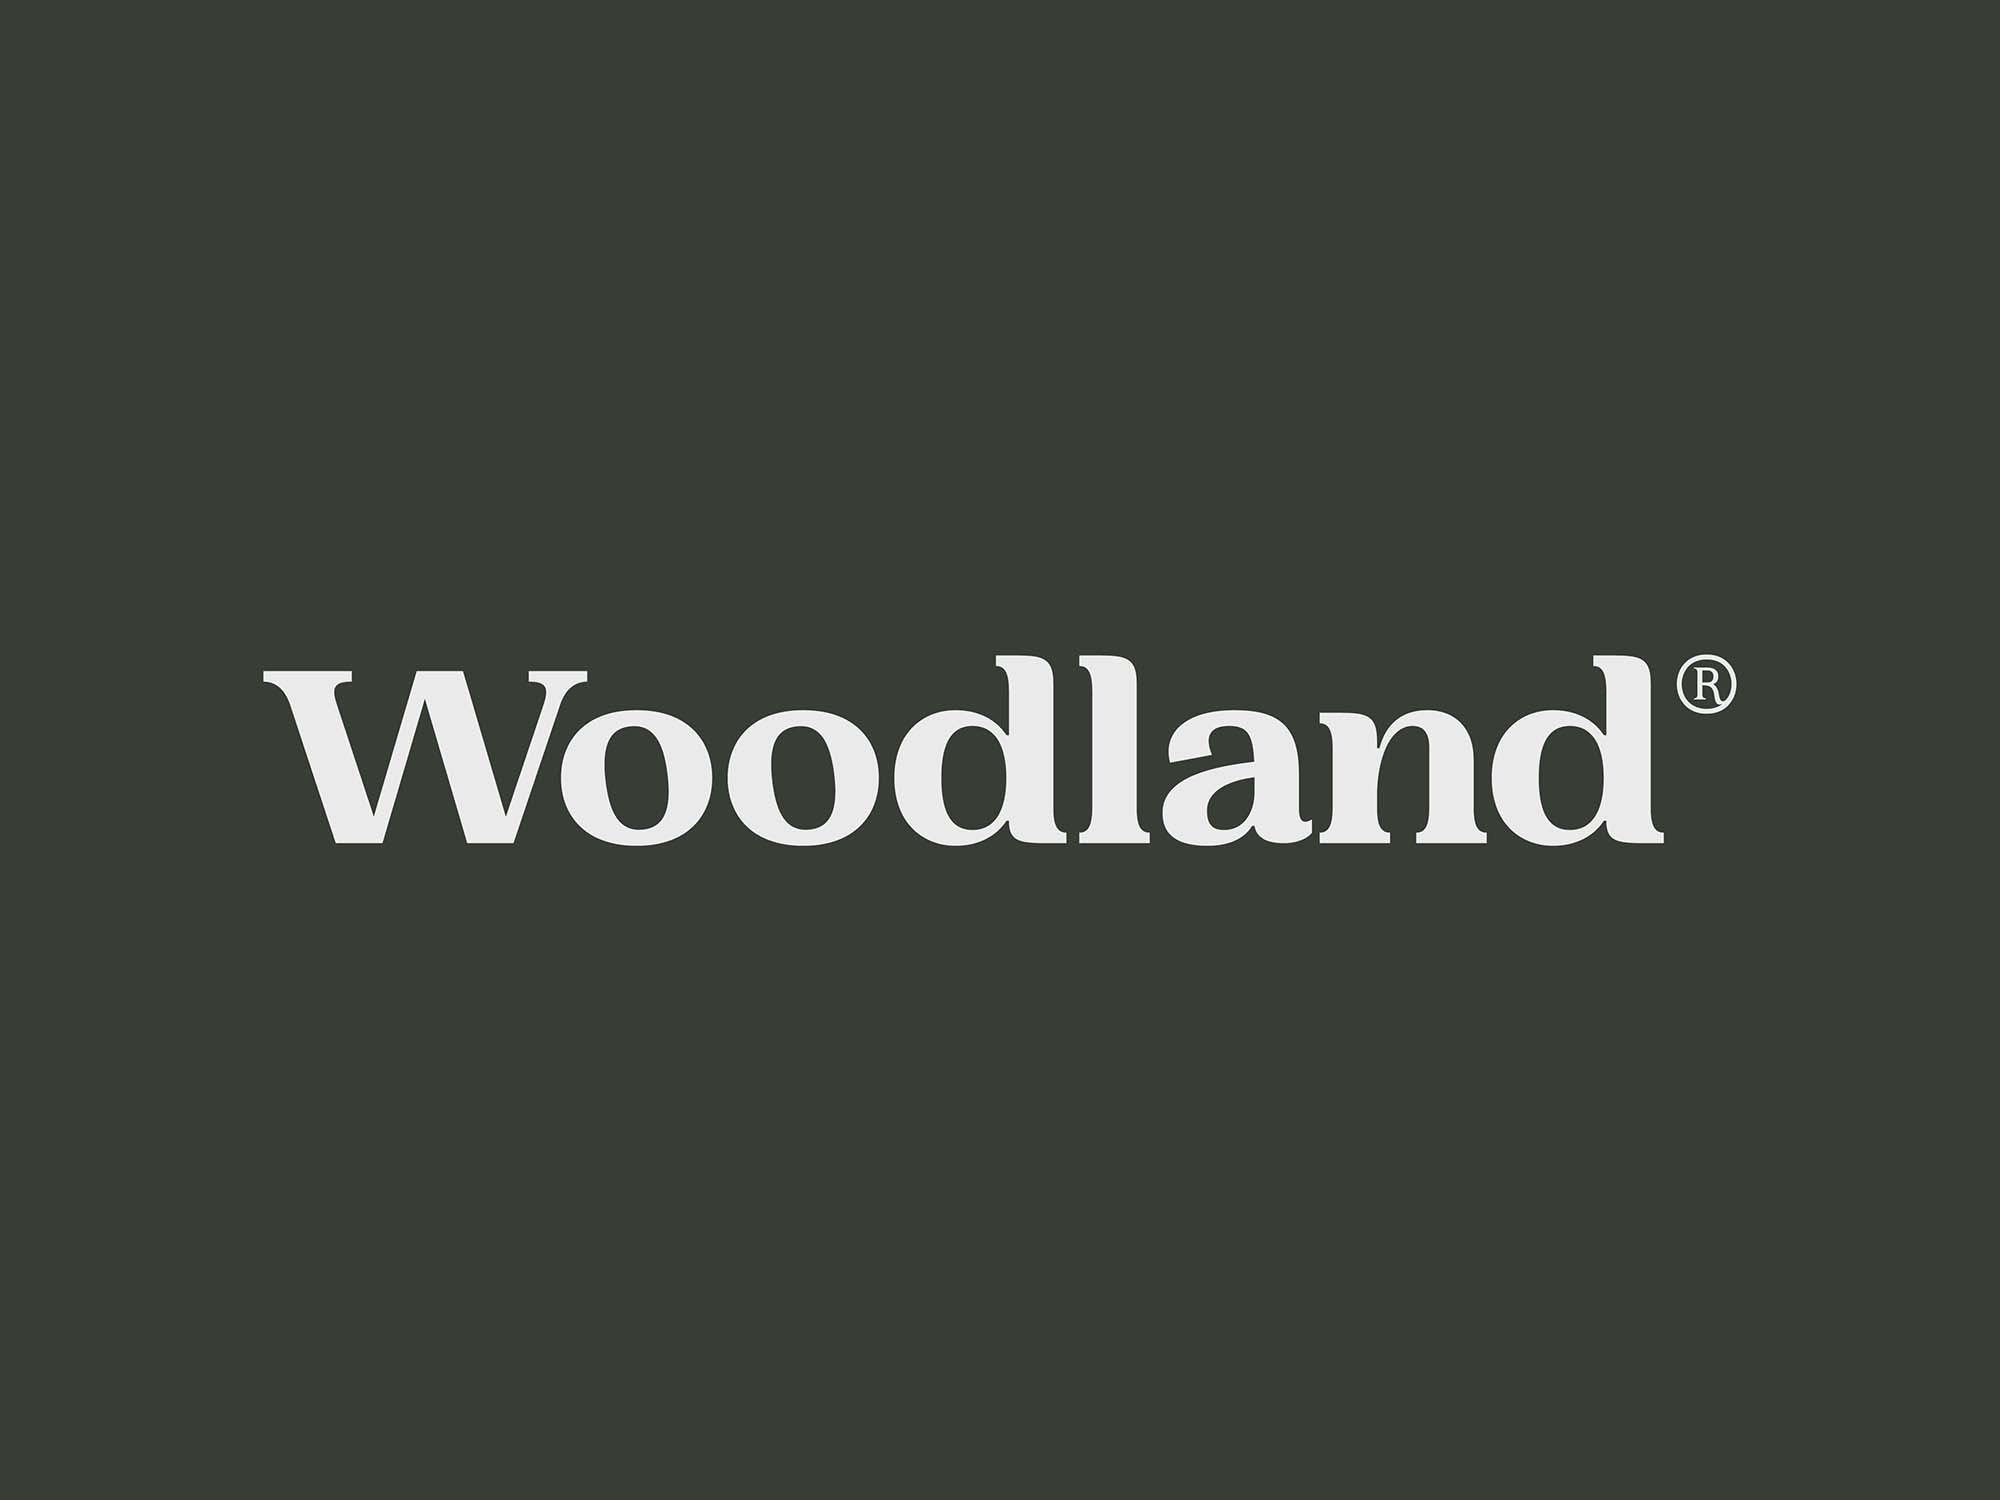 Woodland Serif Typeface Font